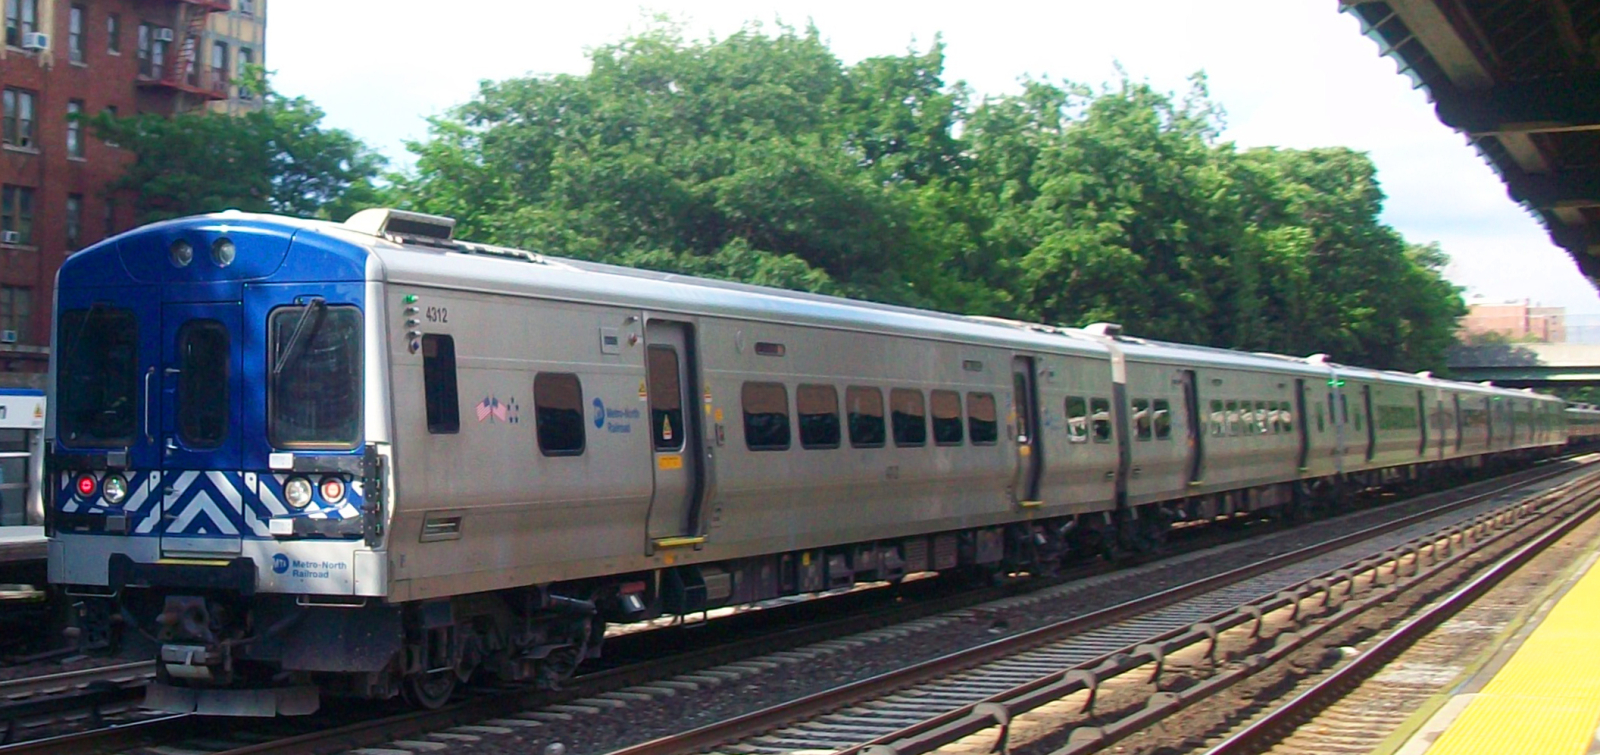 M7 in July 2009 on the Harlem Line at Botanical Garden station, Bronx